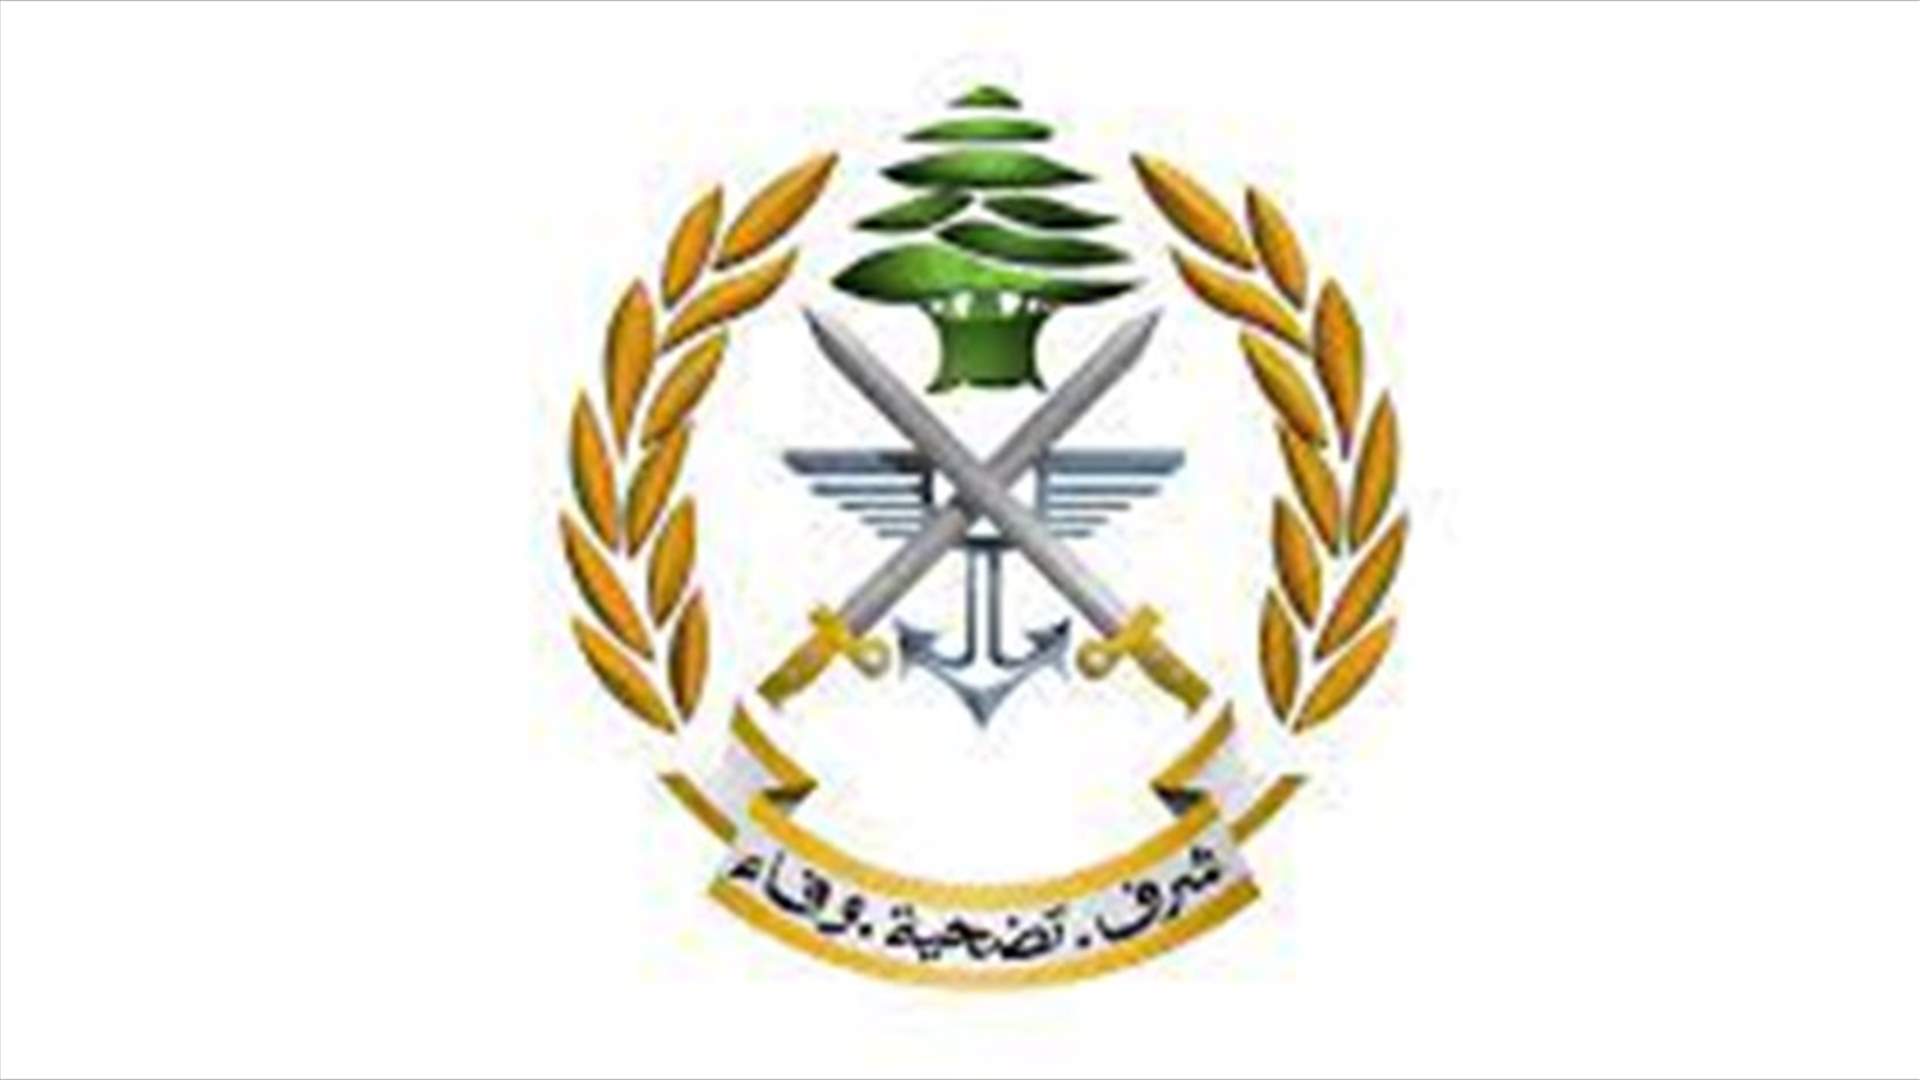 الجيش: أثناء قيام دورية من الجيش بتوقيف سوري في باب الرمل - طرابلس هاجم عناصر الدورية بخنجر